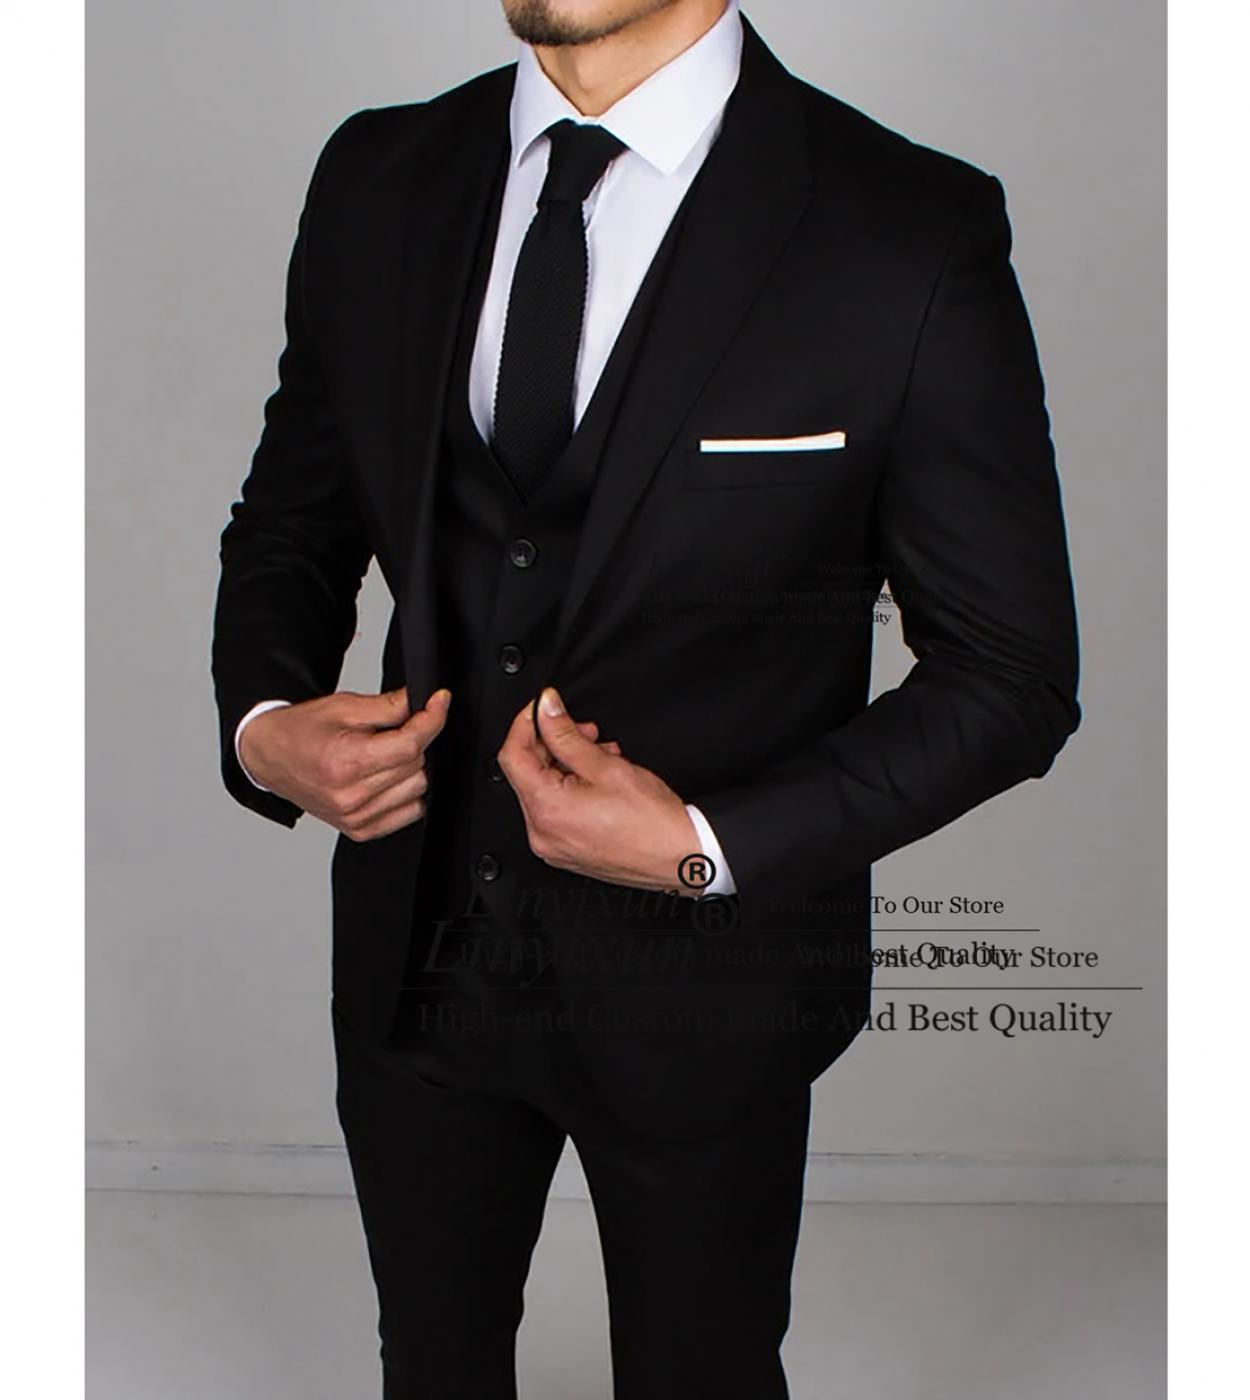 Fashion Black Men Suits 3 Piece Professional Business Blazer Casual Slim Fit Office Work Wear Jacket Vest Pant Set Costu